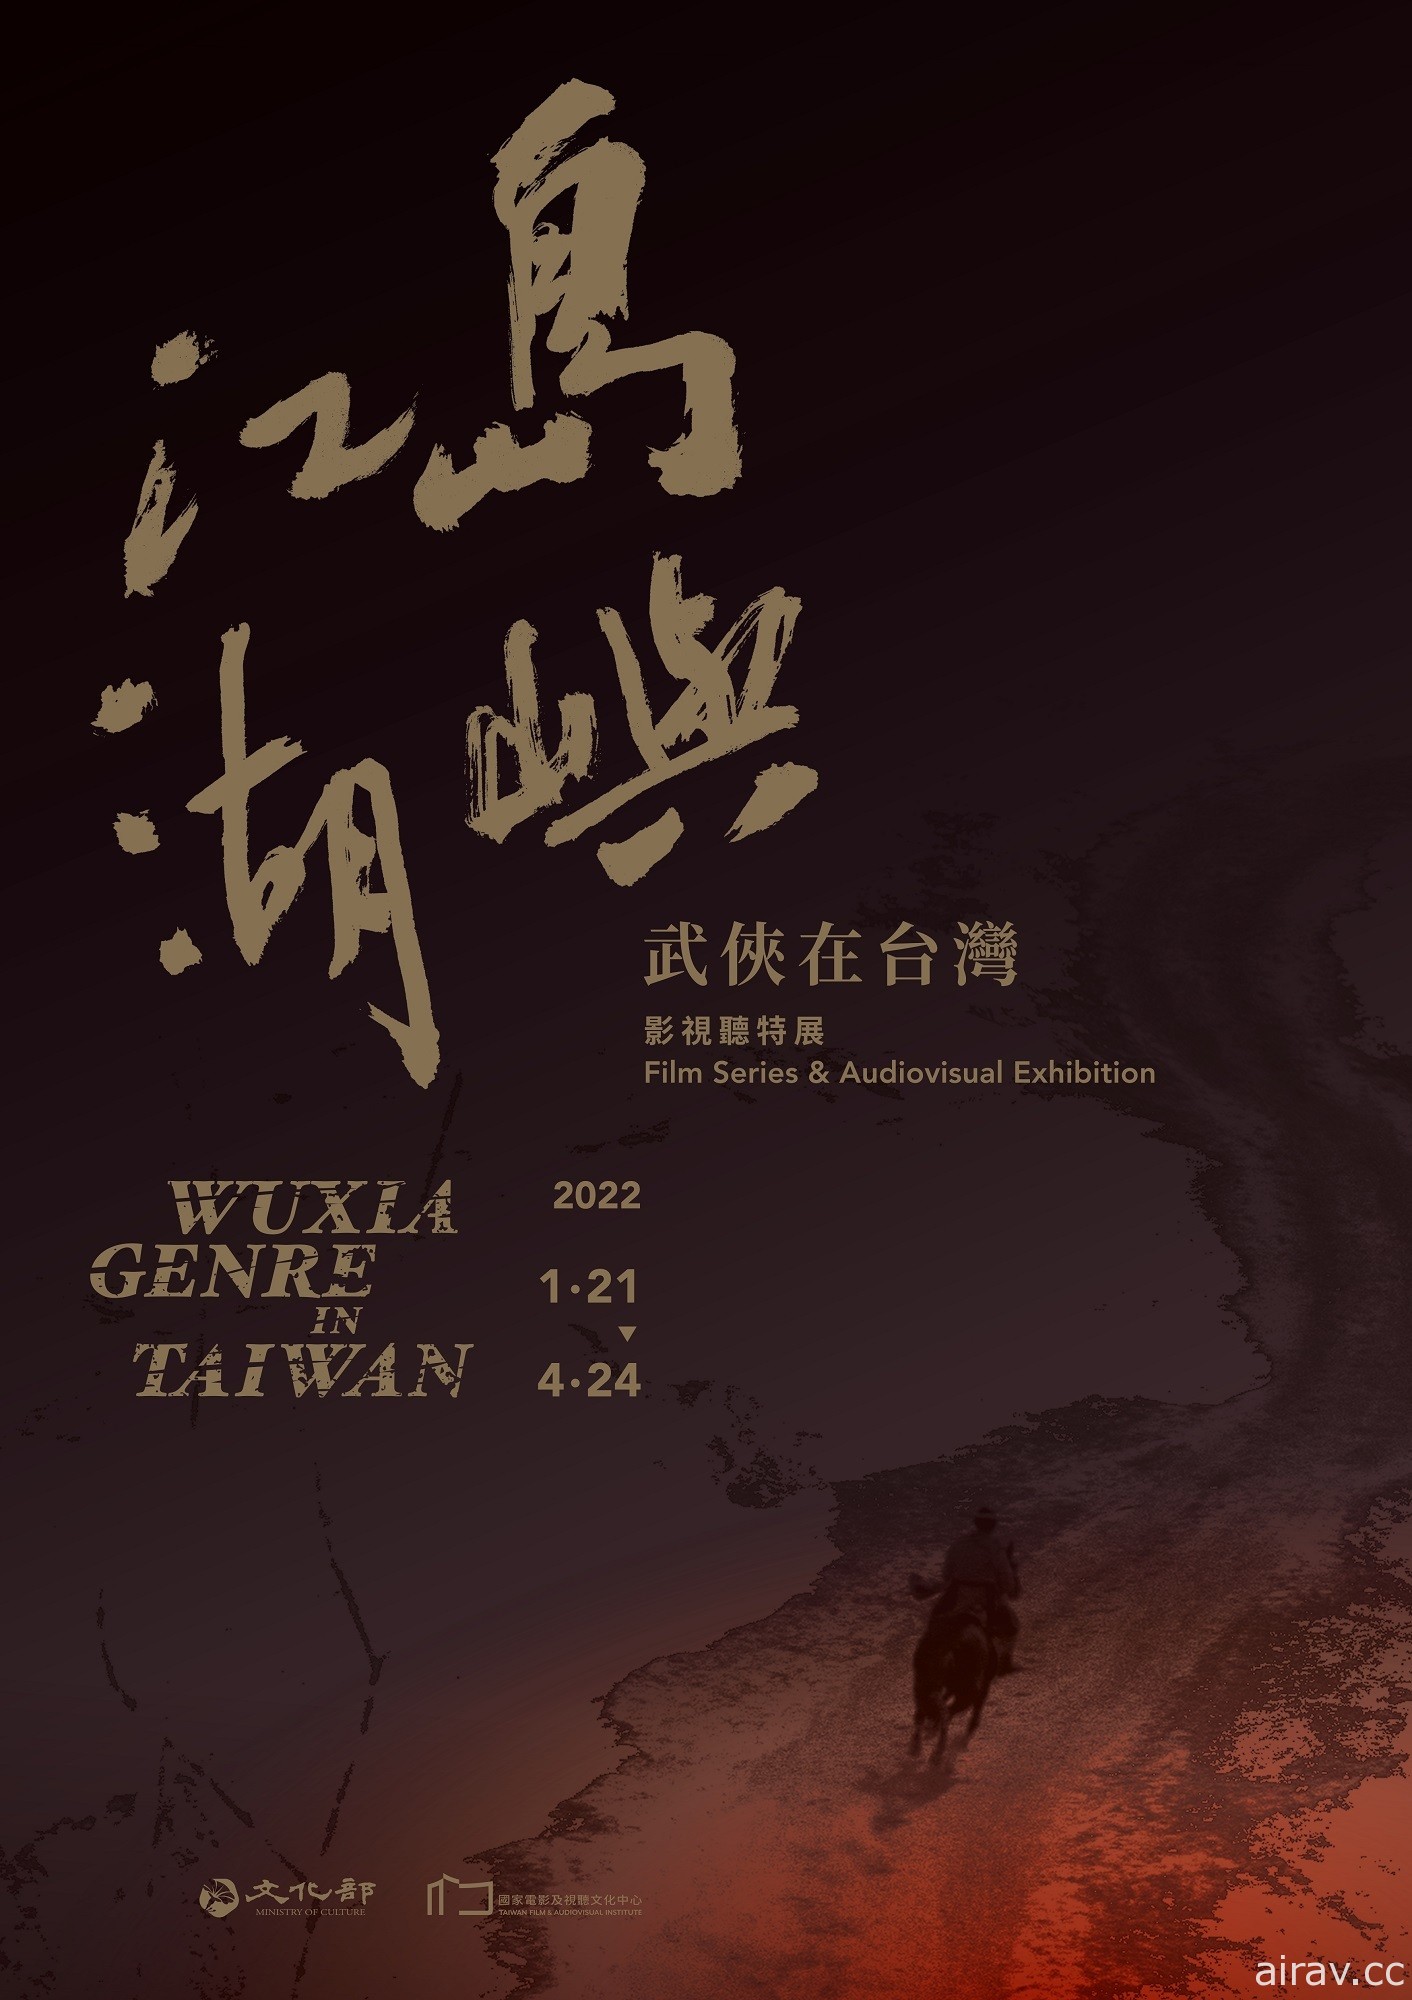 「島嶼江湖：武俠在台灣」特展本週登場 《聖石傳說》《諸葛四郎》展中上映